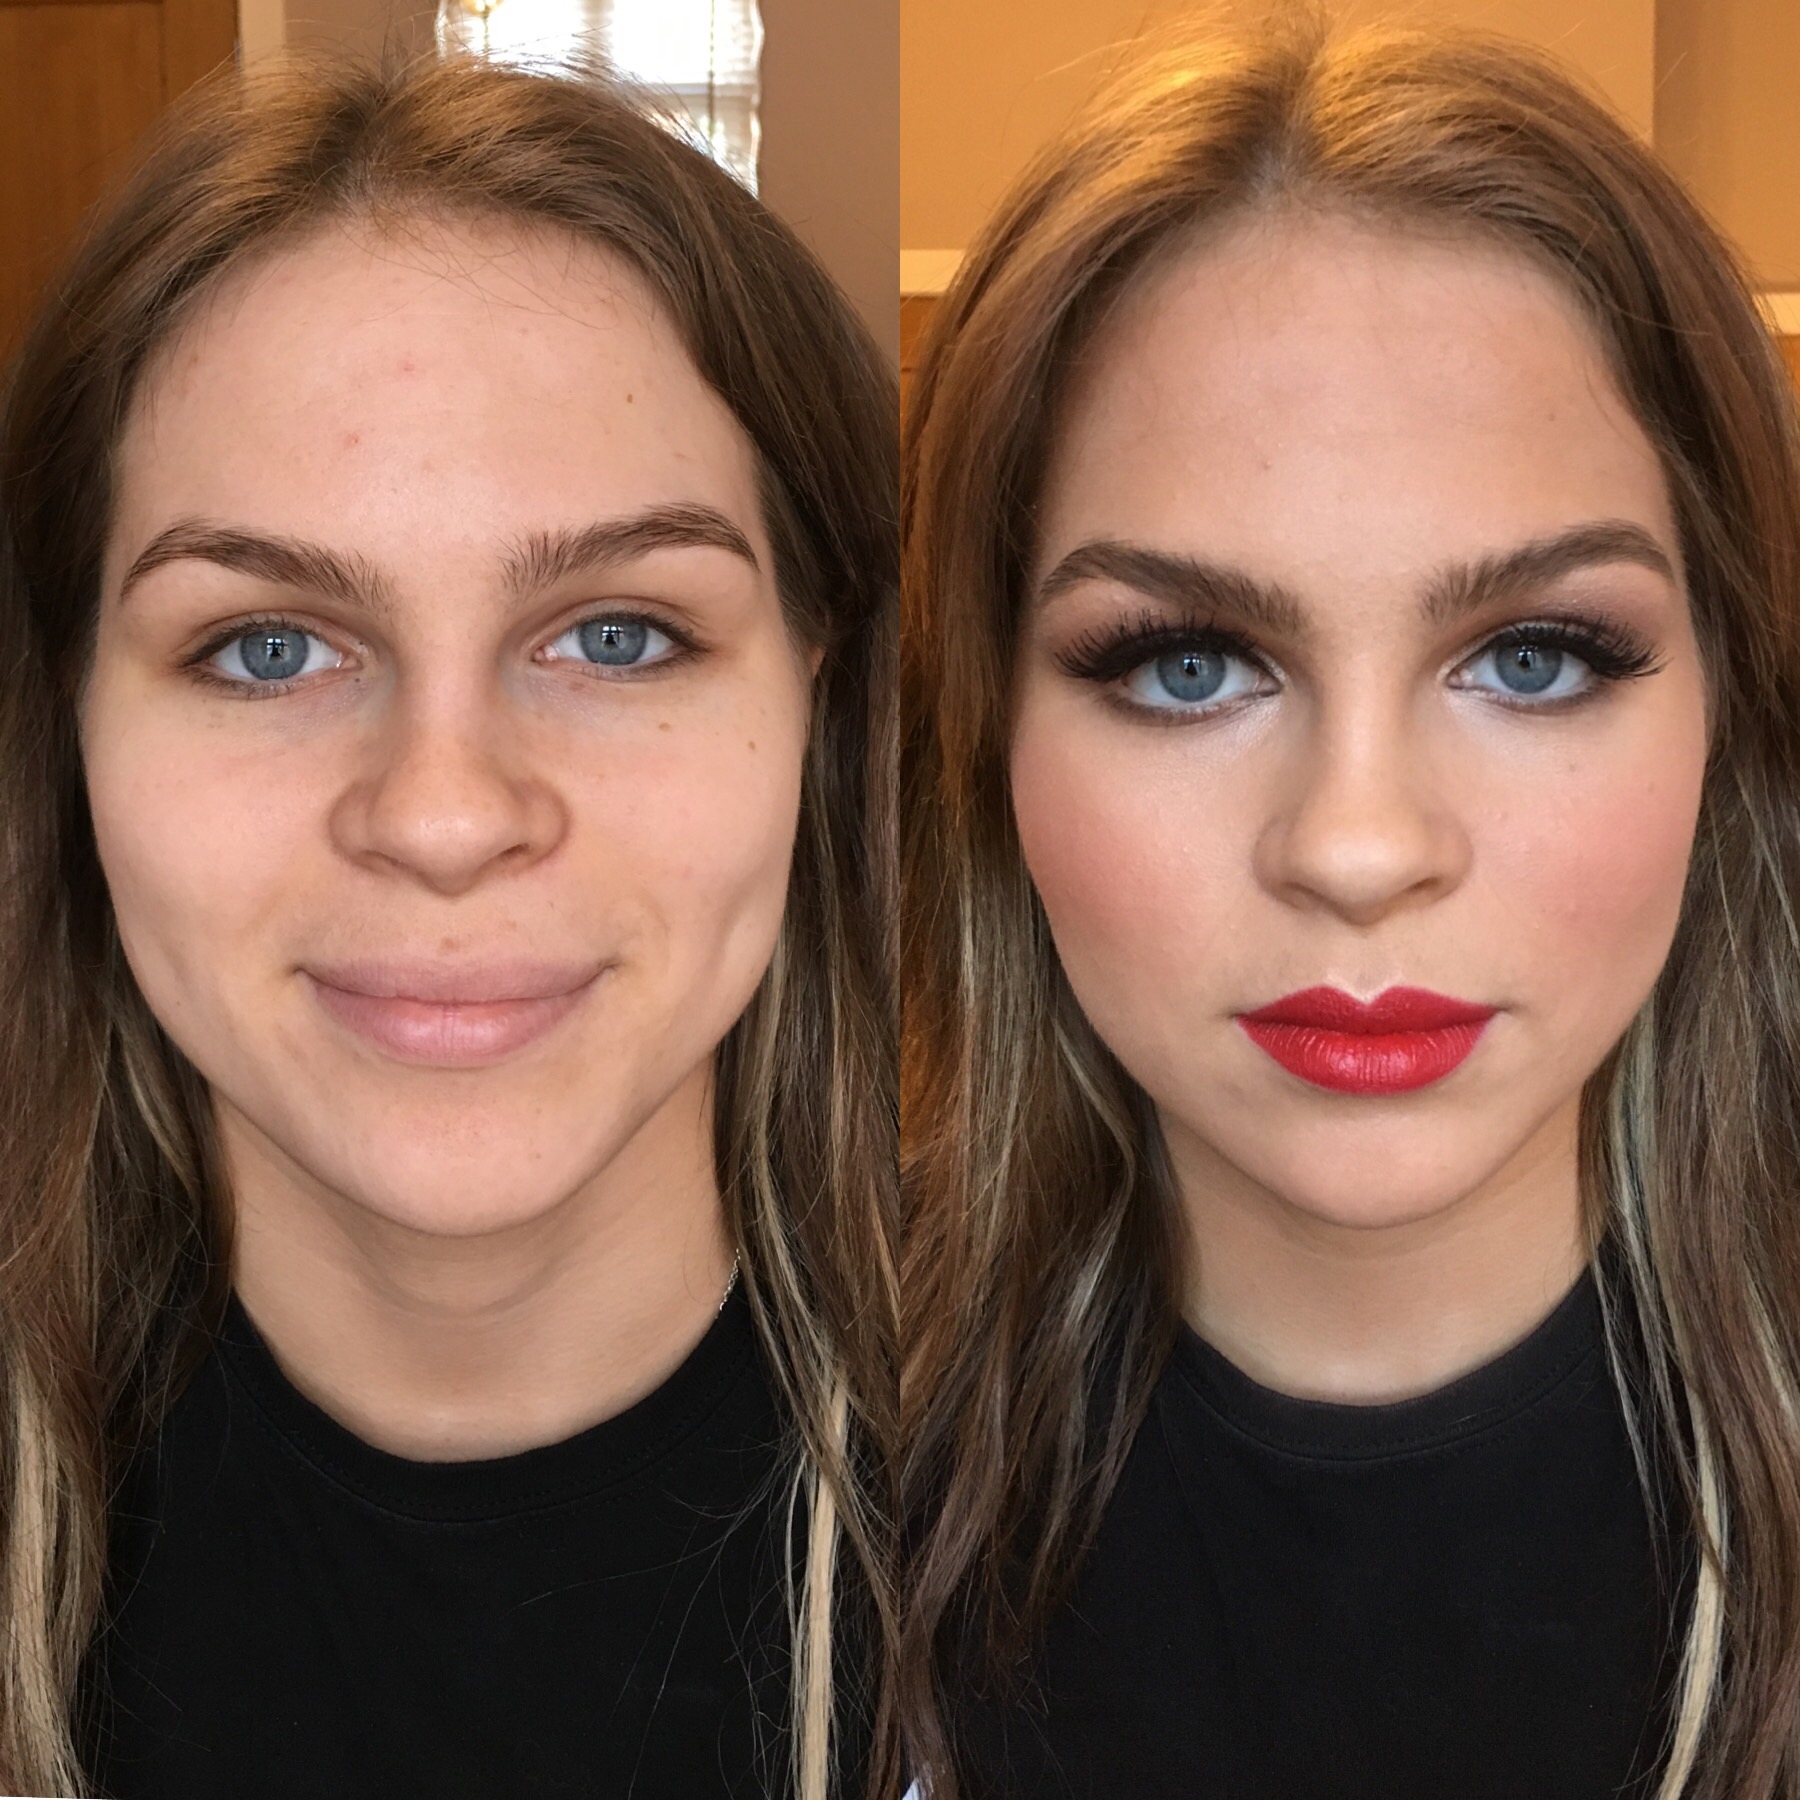 Olivia - makeup by Tina Brocklebank using Charlotte Tilbury.